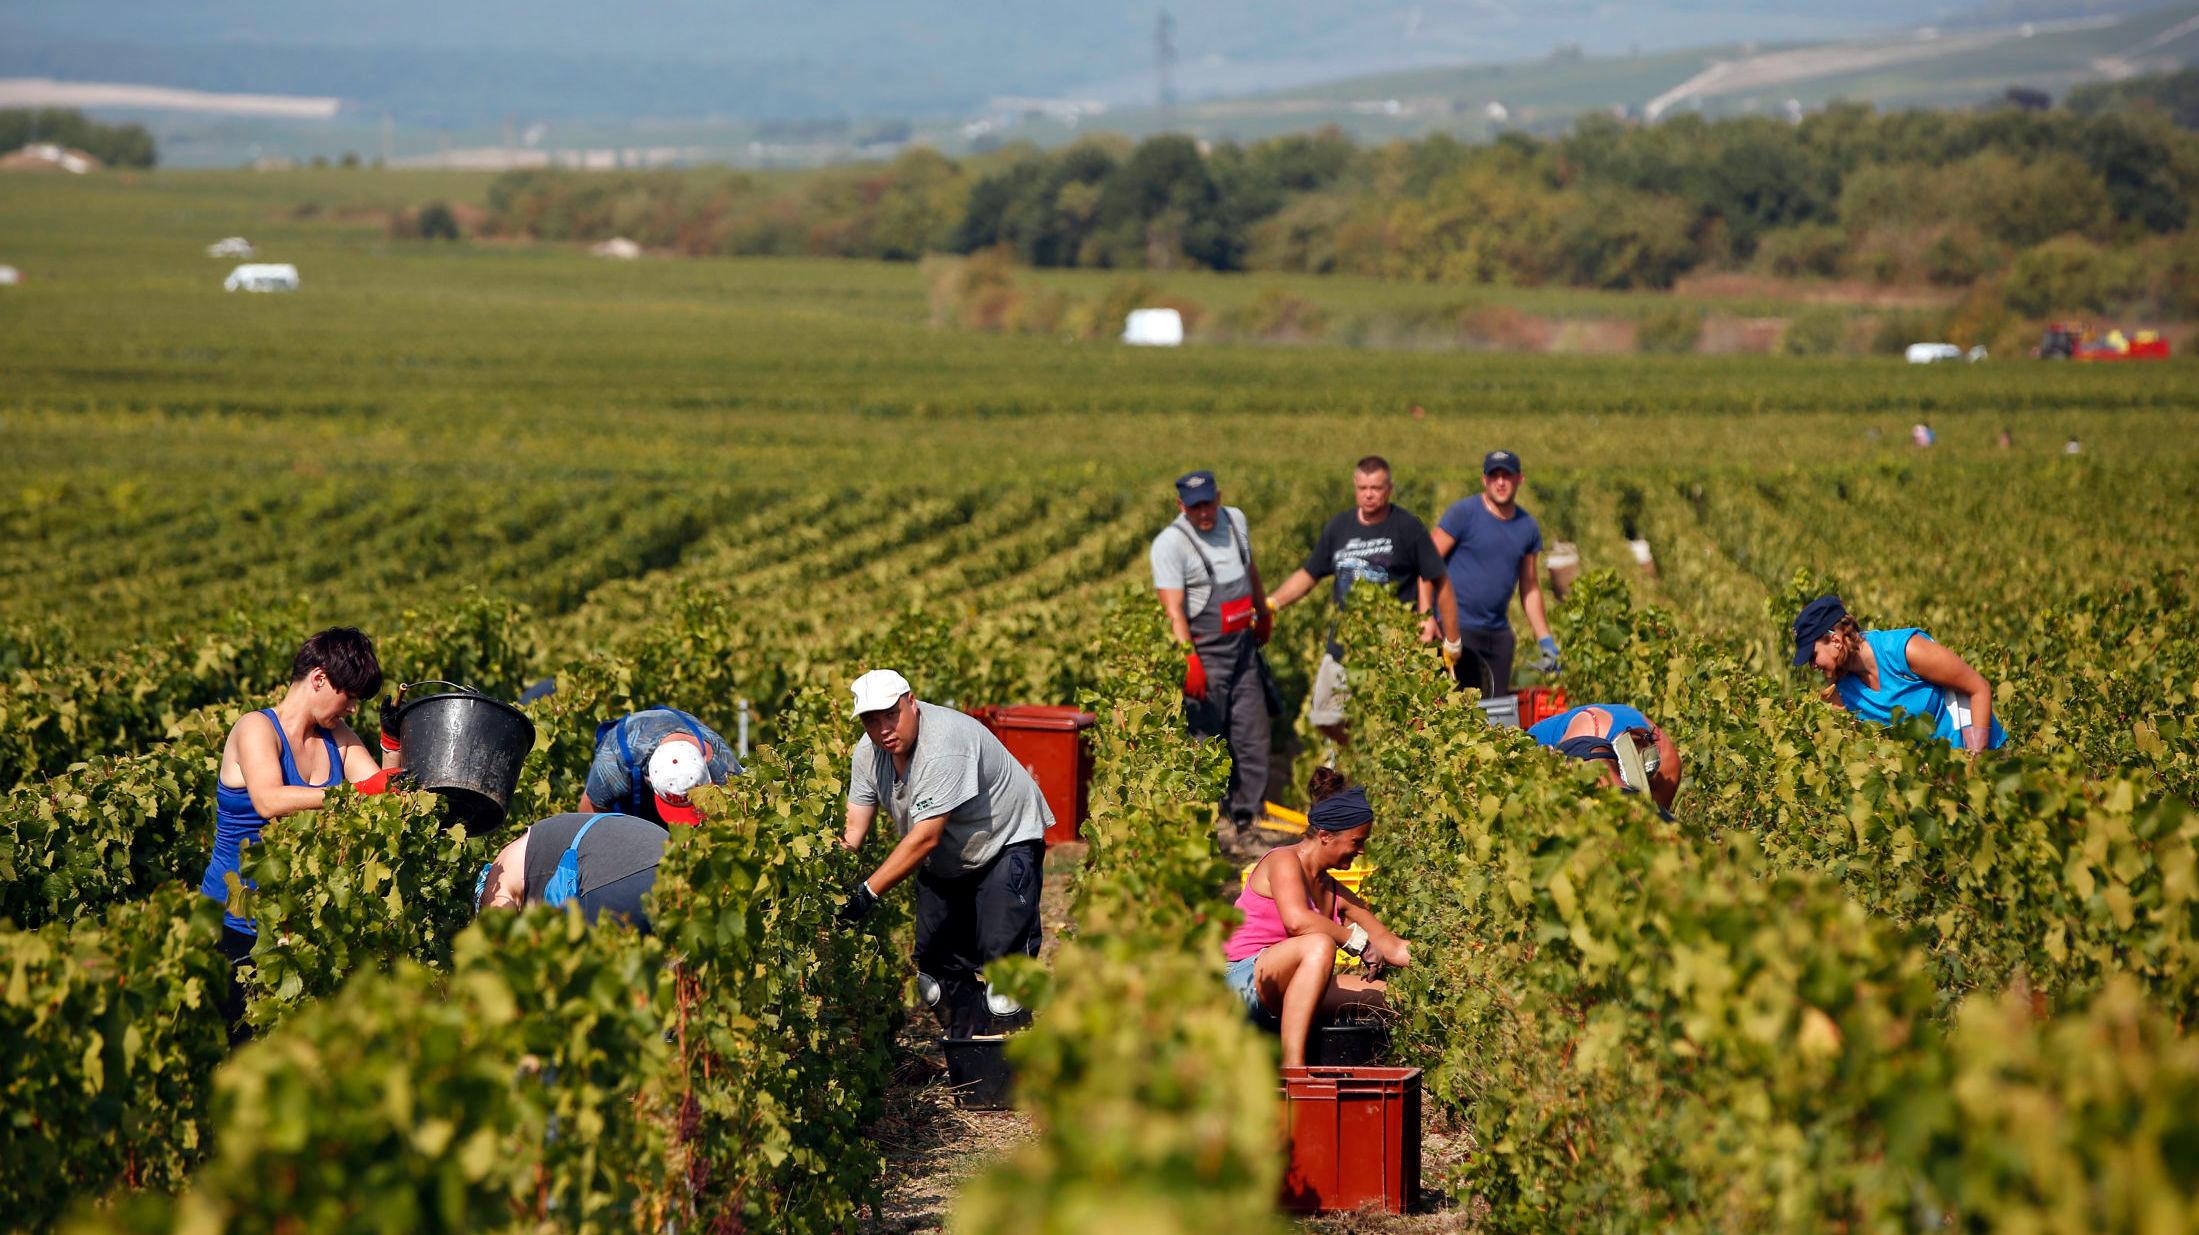 HØSTER: Arbeidere høster inn druer i Champagne-distriktet øst i Frankrike. Etter en svært varm sommer som forskere mener kan knyttes til klimaendringene, har innhøsting blitt gjennomført tidligere enn vanlig. Bildet ble tatt 28. august. Foto: Thibault Camus/AP/NTB scanpix